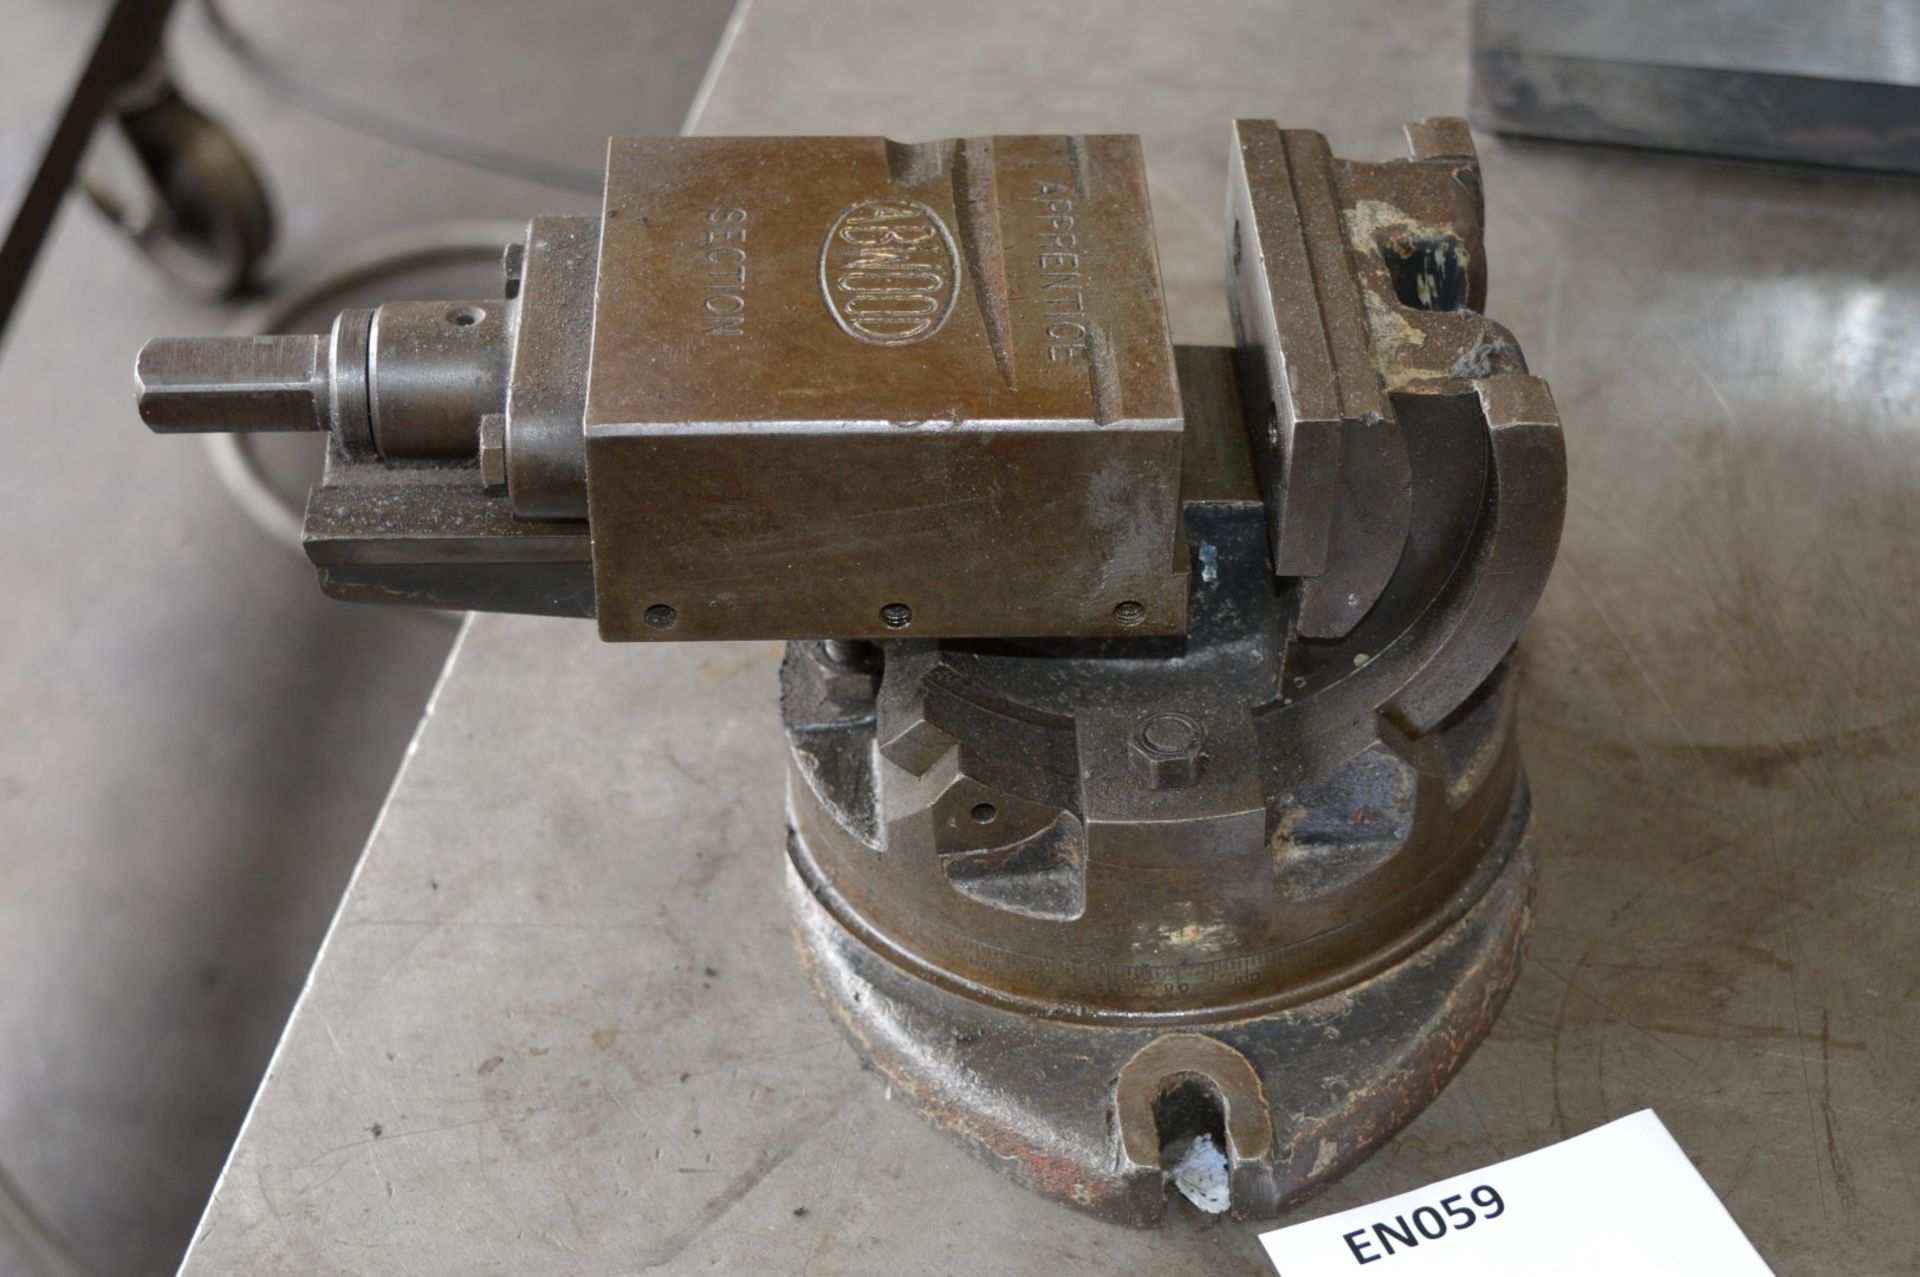 1 x Abwood Heavy Duty Tilting & Swiveling Machine Vice - CL202 - Ref EN059 - Location: Worcester